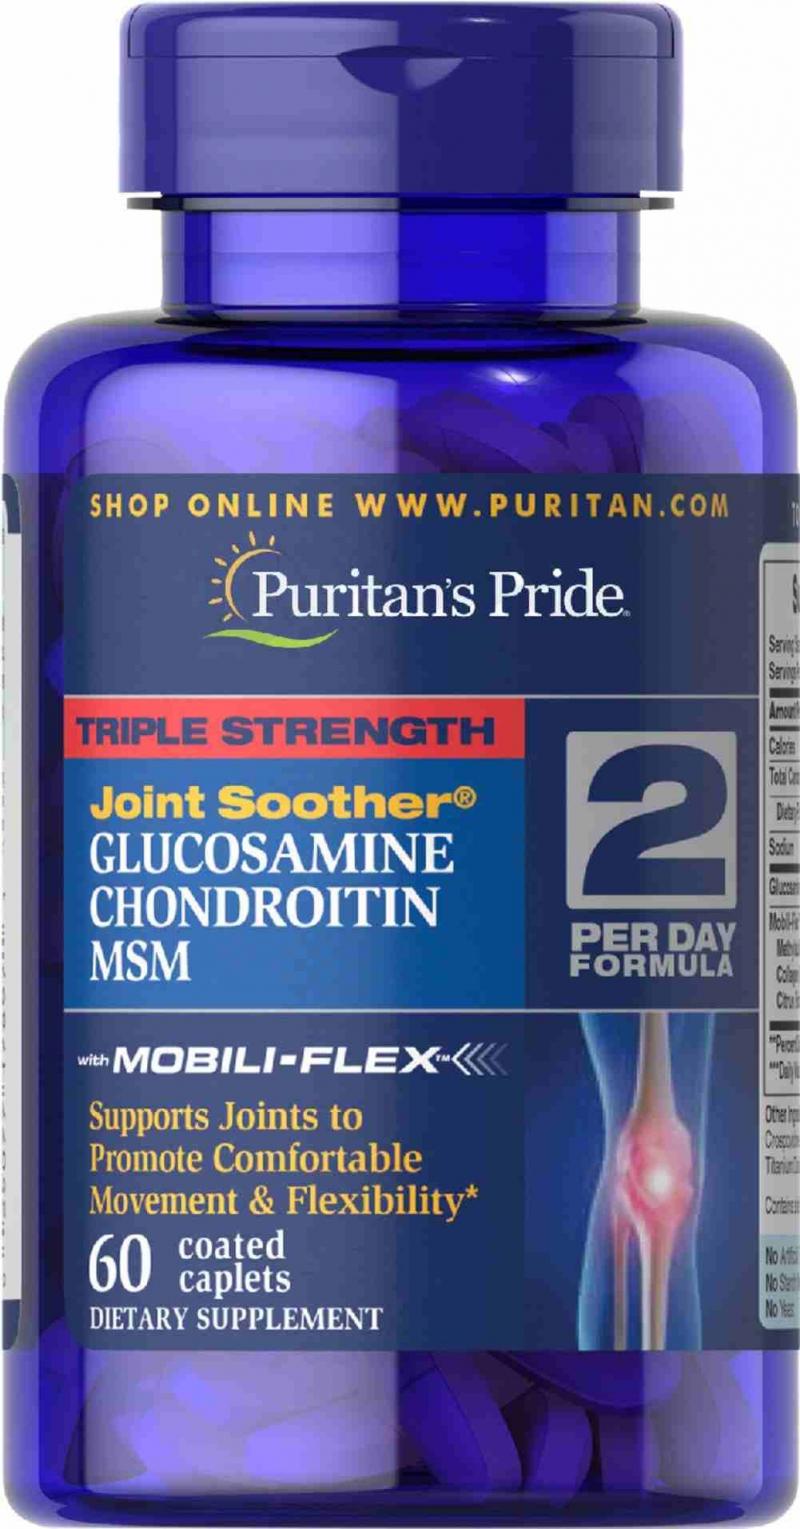 Viên uống Puritan's Pride Triple Strength Glucosamin Chondroitin MSM